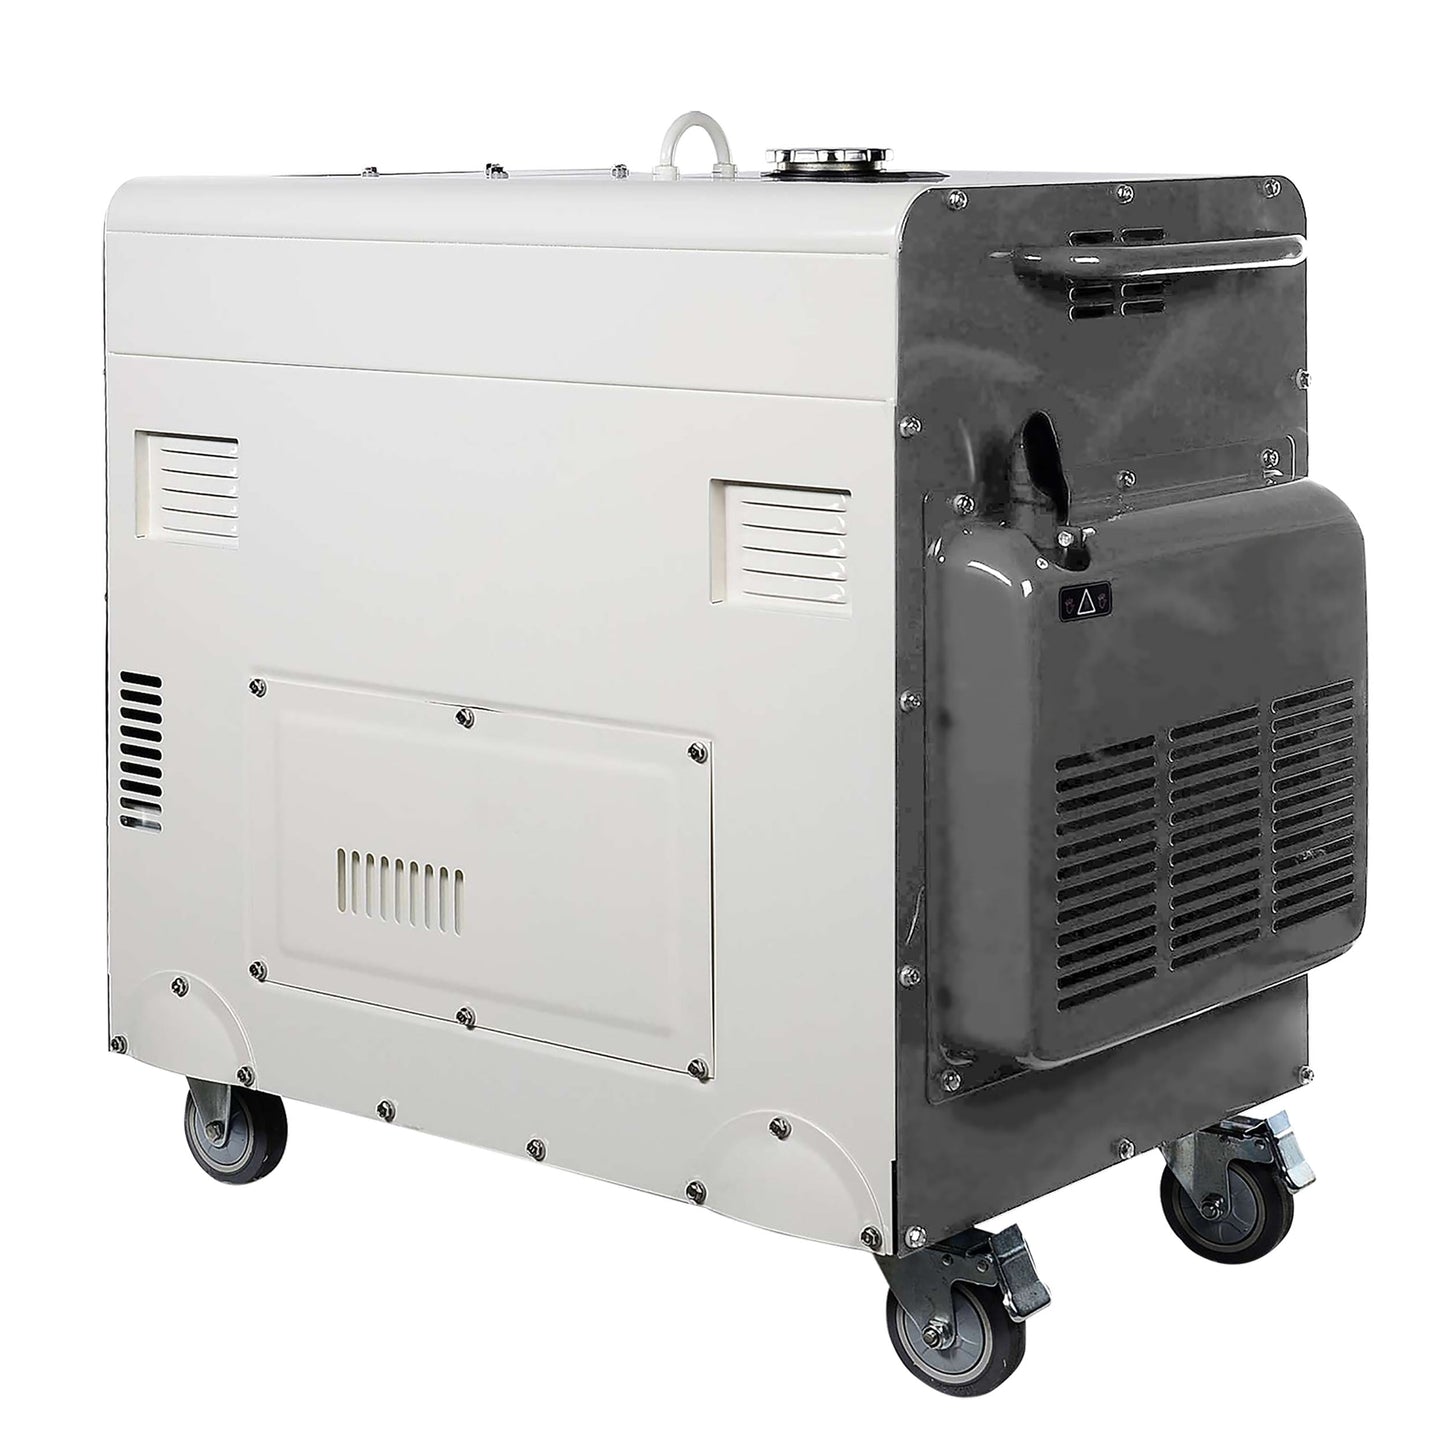 Diesel generator KS 9200HDES-1/3 ATSR